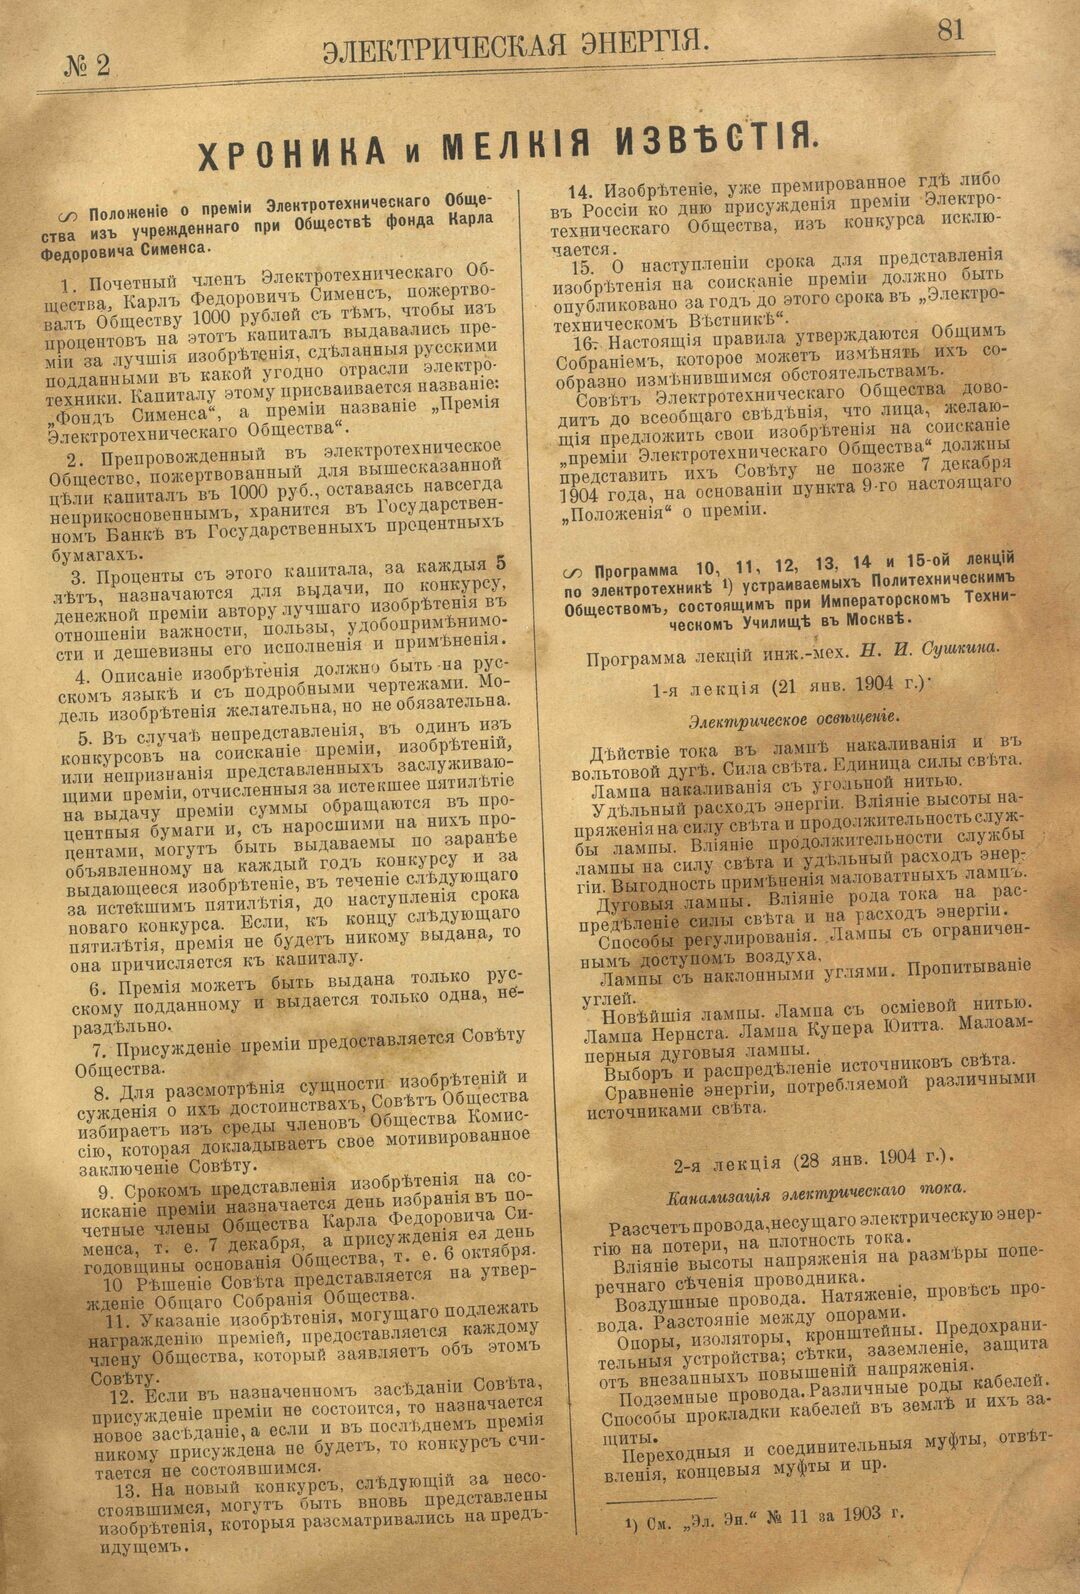 Рис. 1. Журнал Электрическая Энергiя, 2 номер, февраль, 1904 года, страница 81